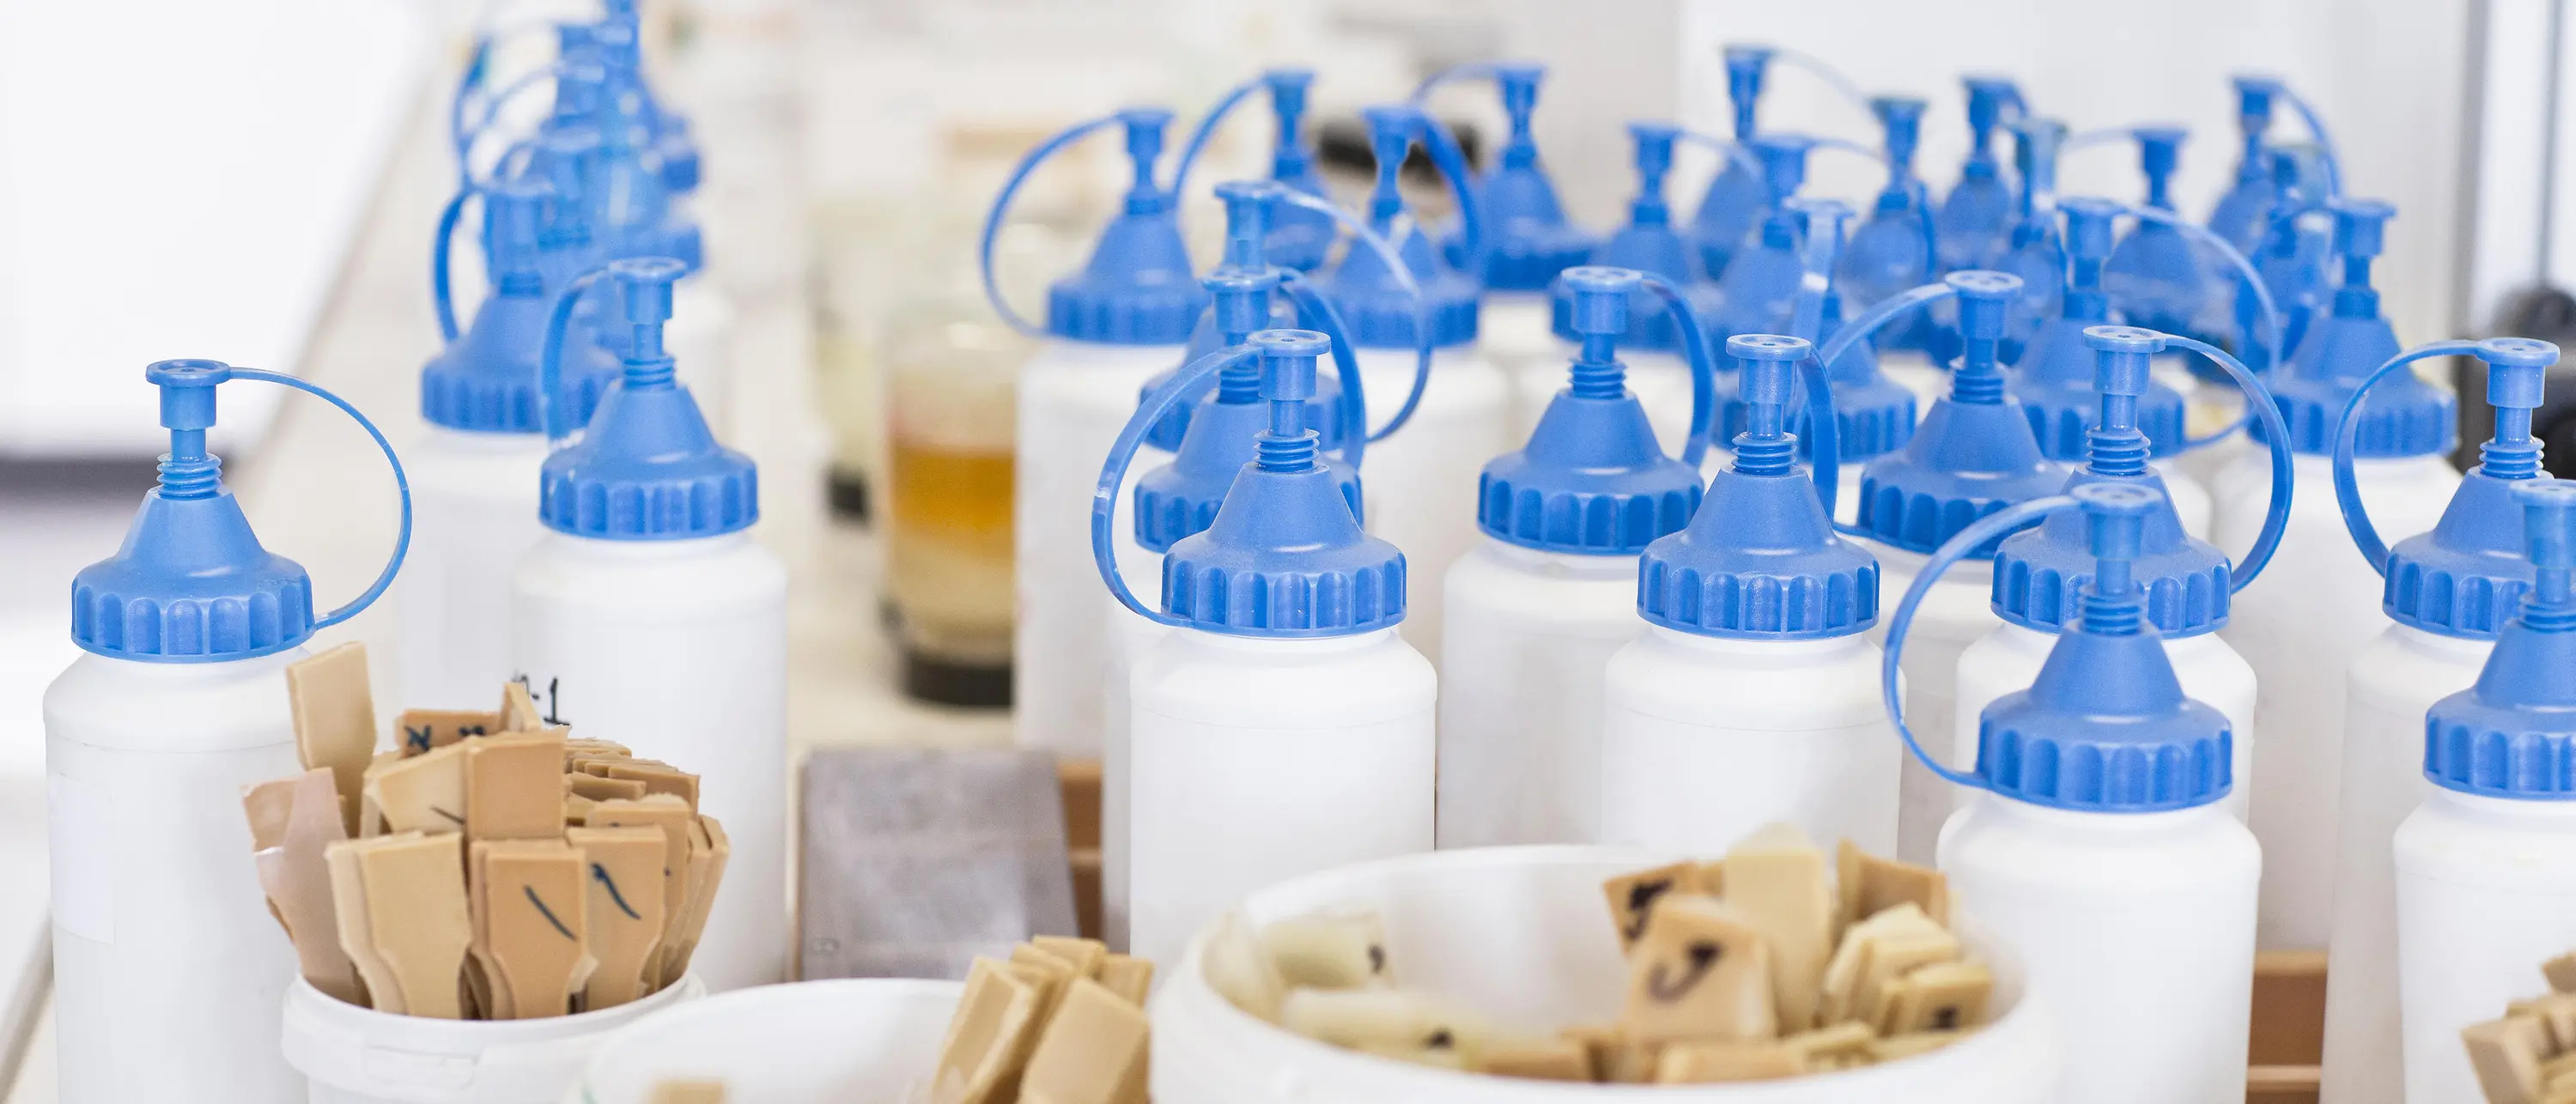 botellas de plástico blancas con tapas azules debajo de tazas con pequeñas espátulas de madera